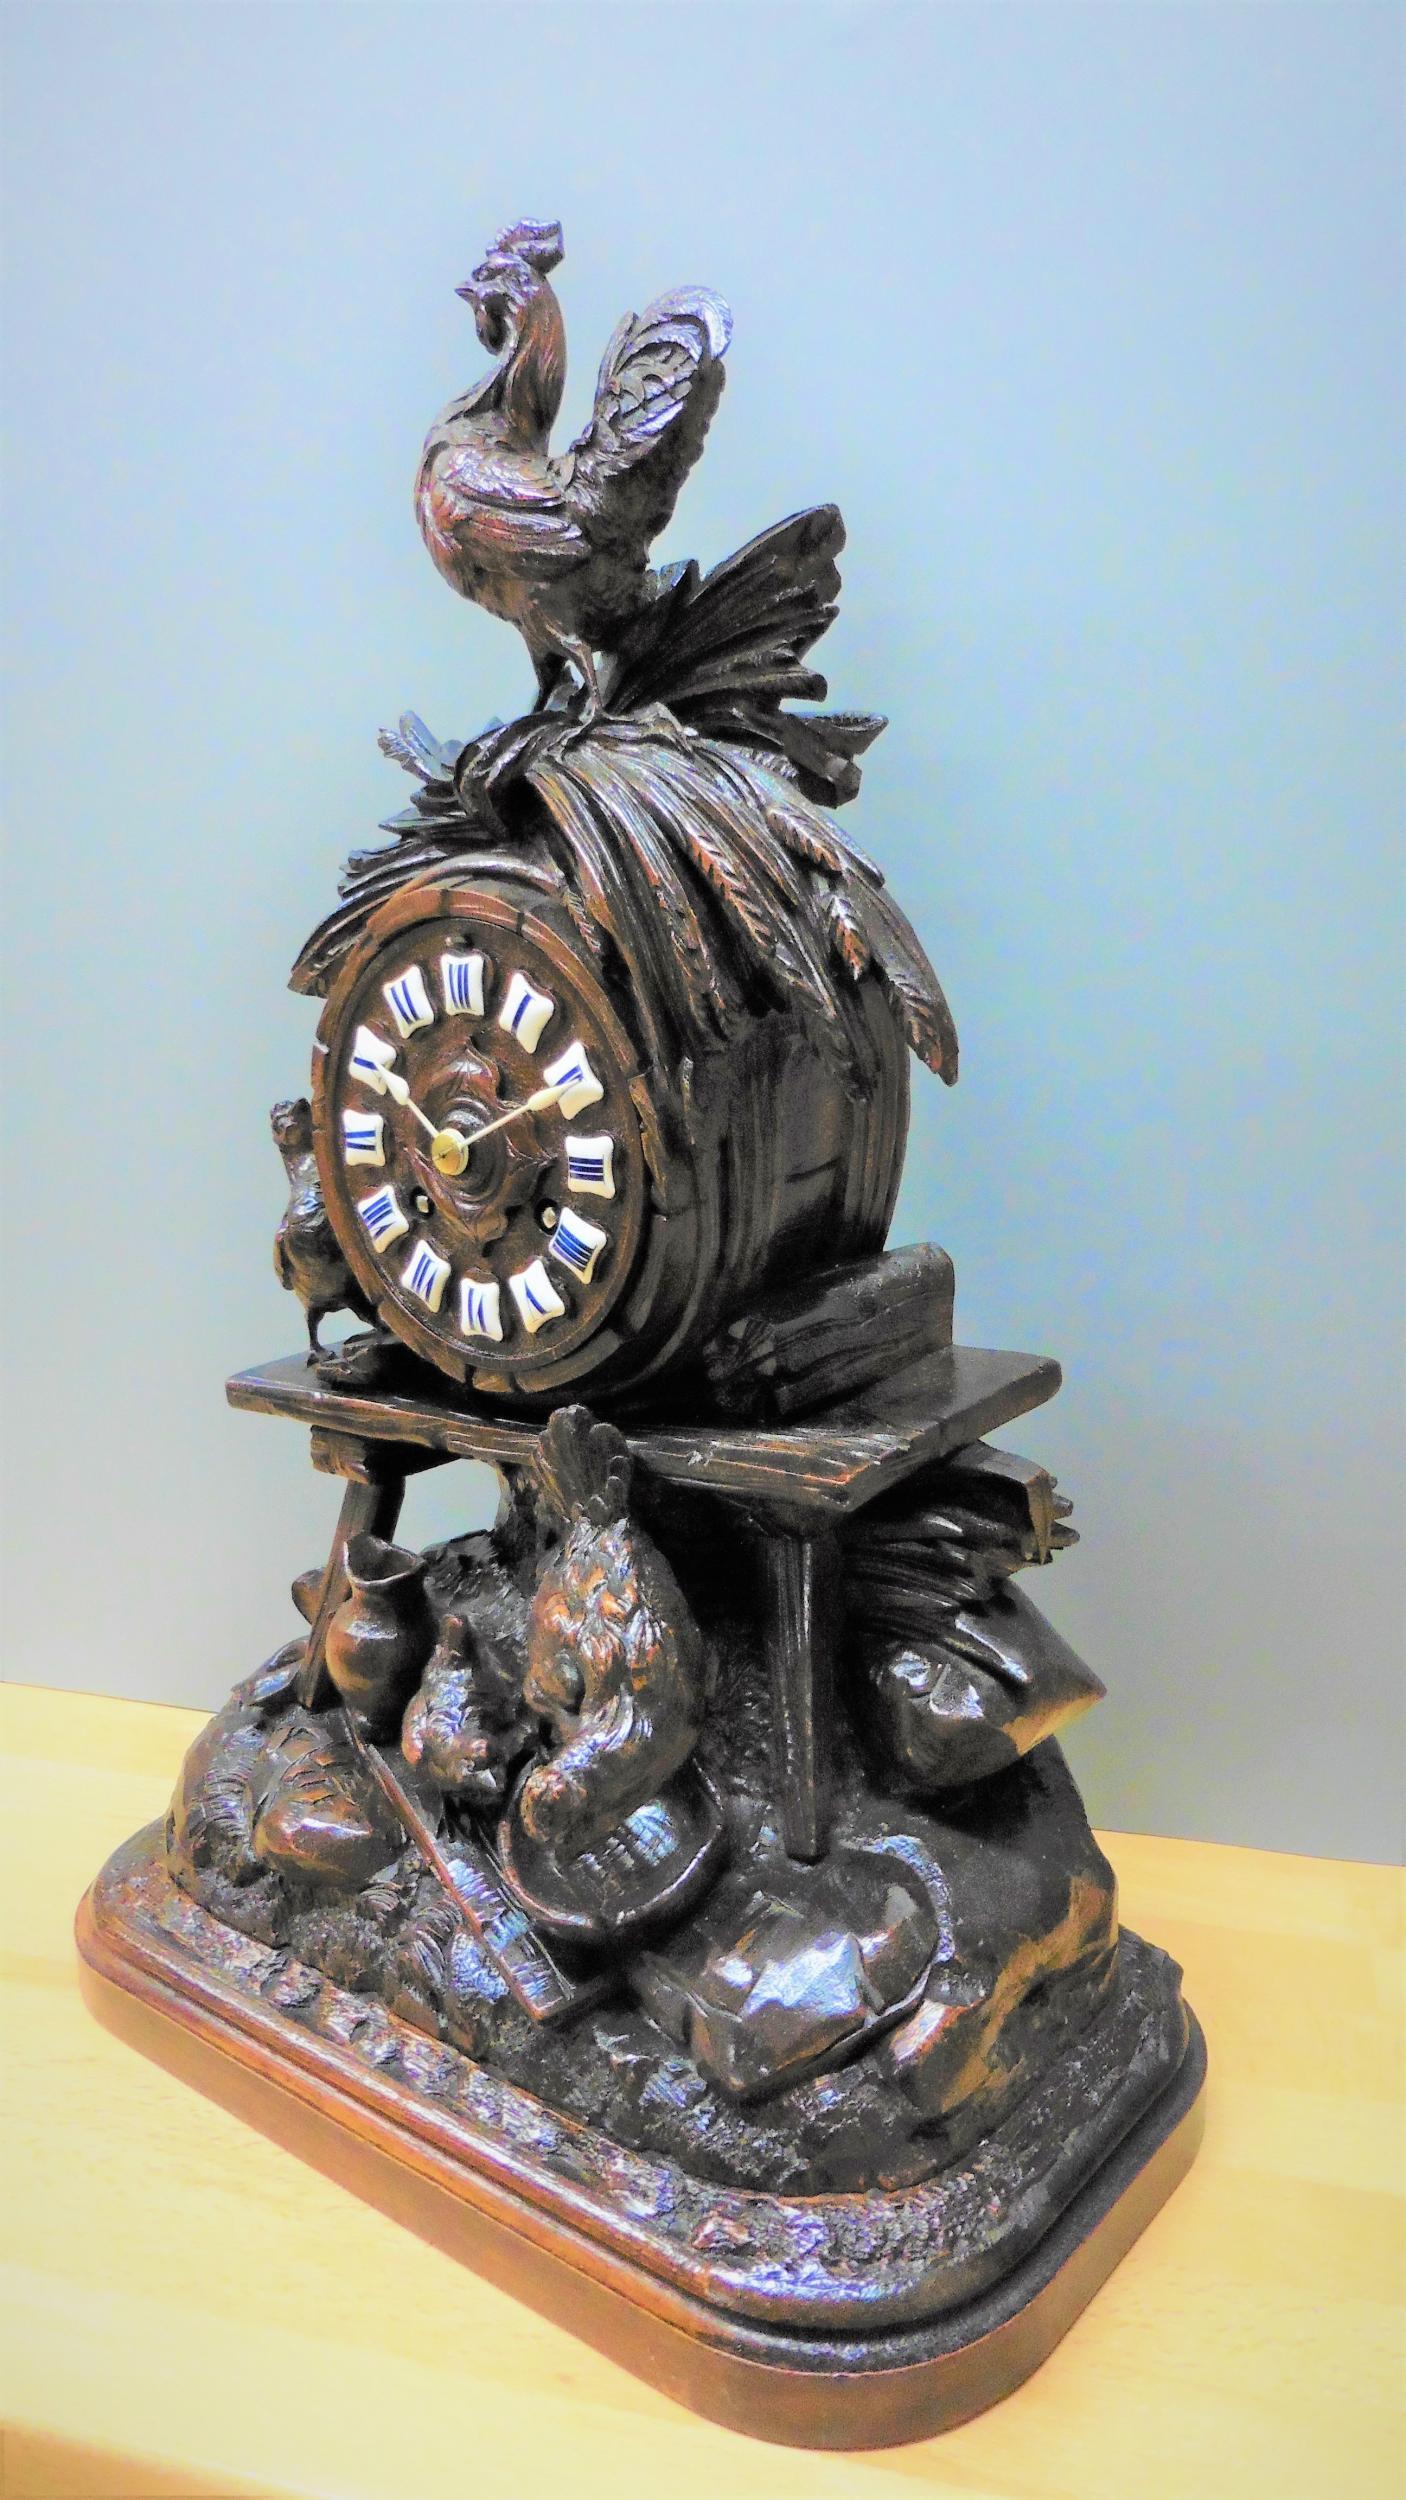 Horloge de cheminée sculptée Black Forest

Pendule de cheminée de la Forêt-Noire magnifiquement sculptée à la main avec un grand souci du détail, représentant une scène de basse-cour avec une poule et un poussin se nourrissant et un coq se